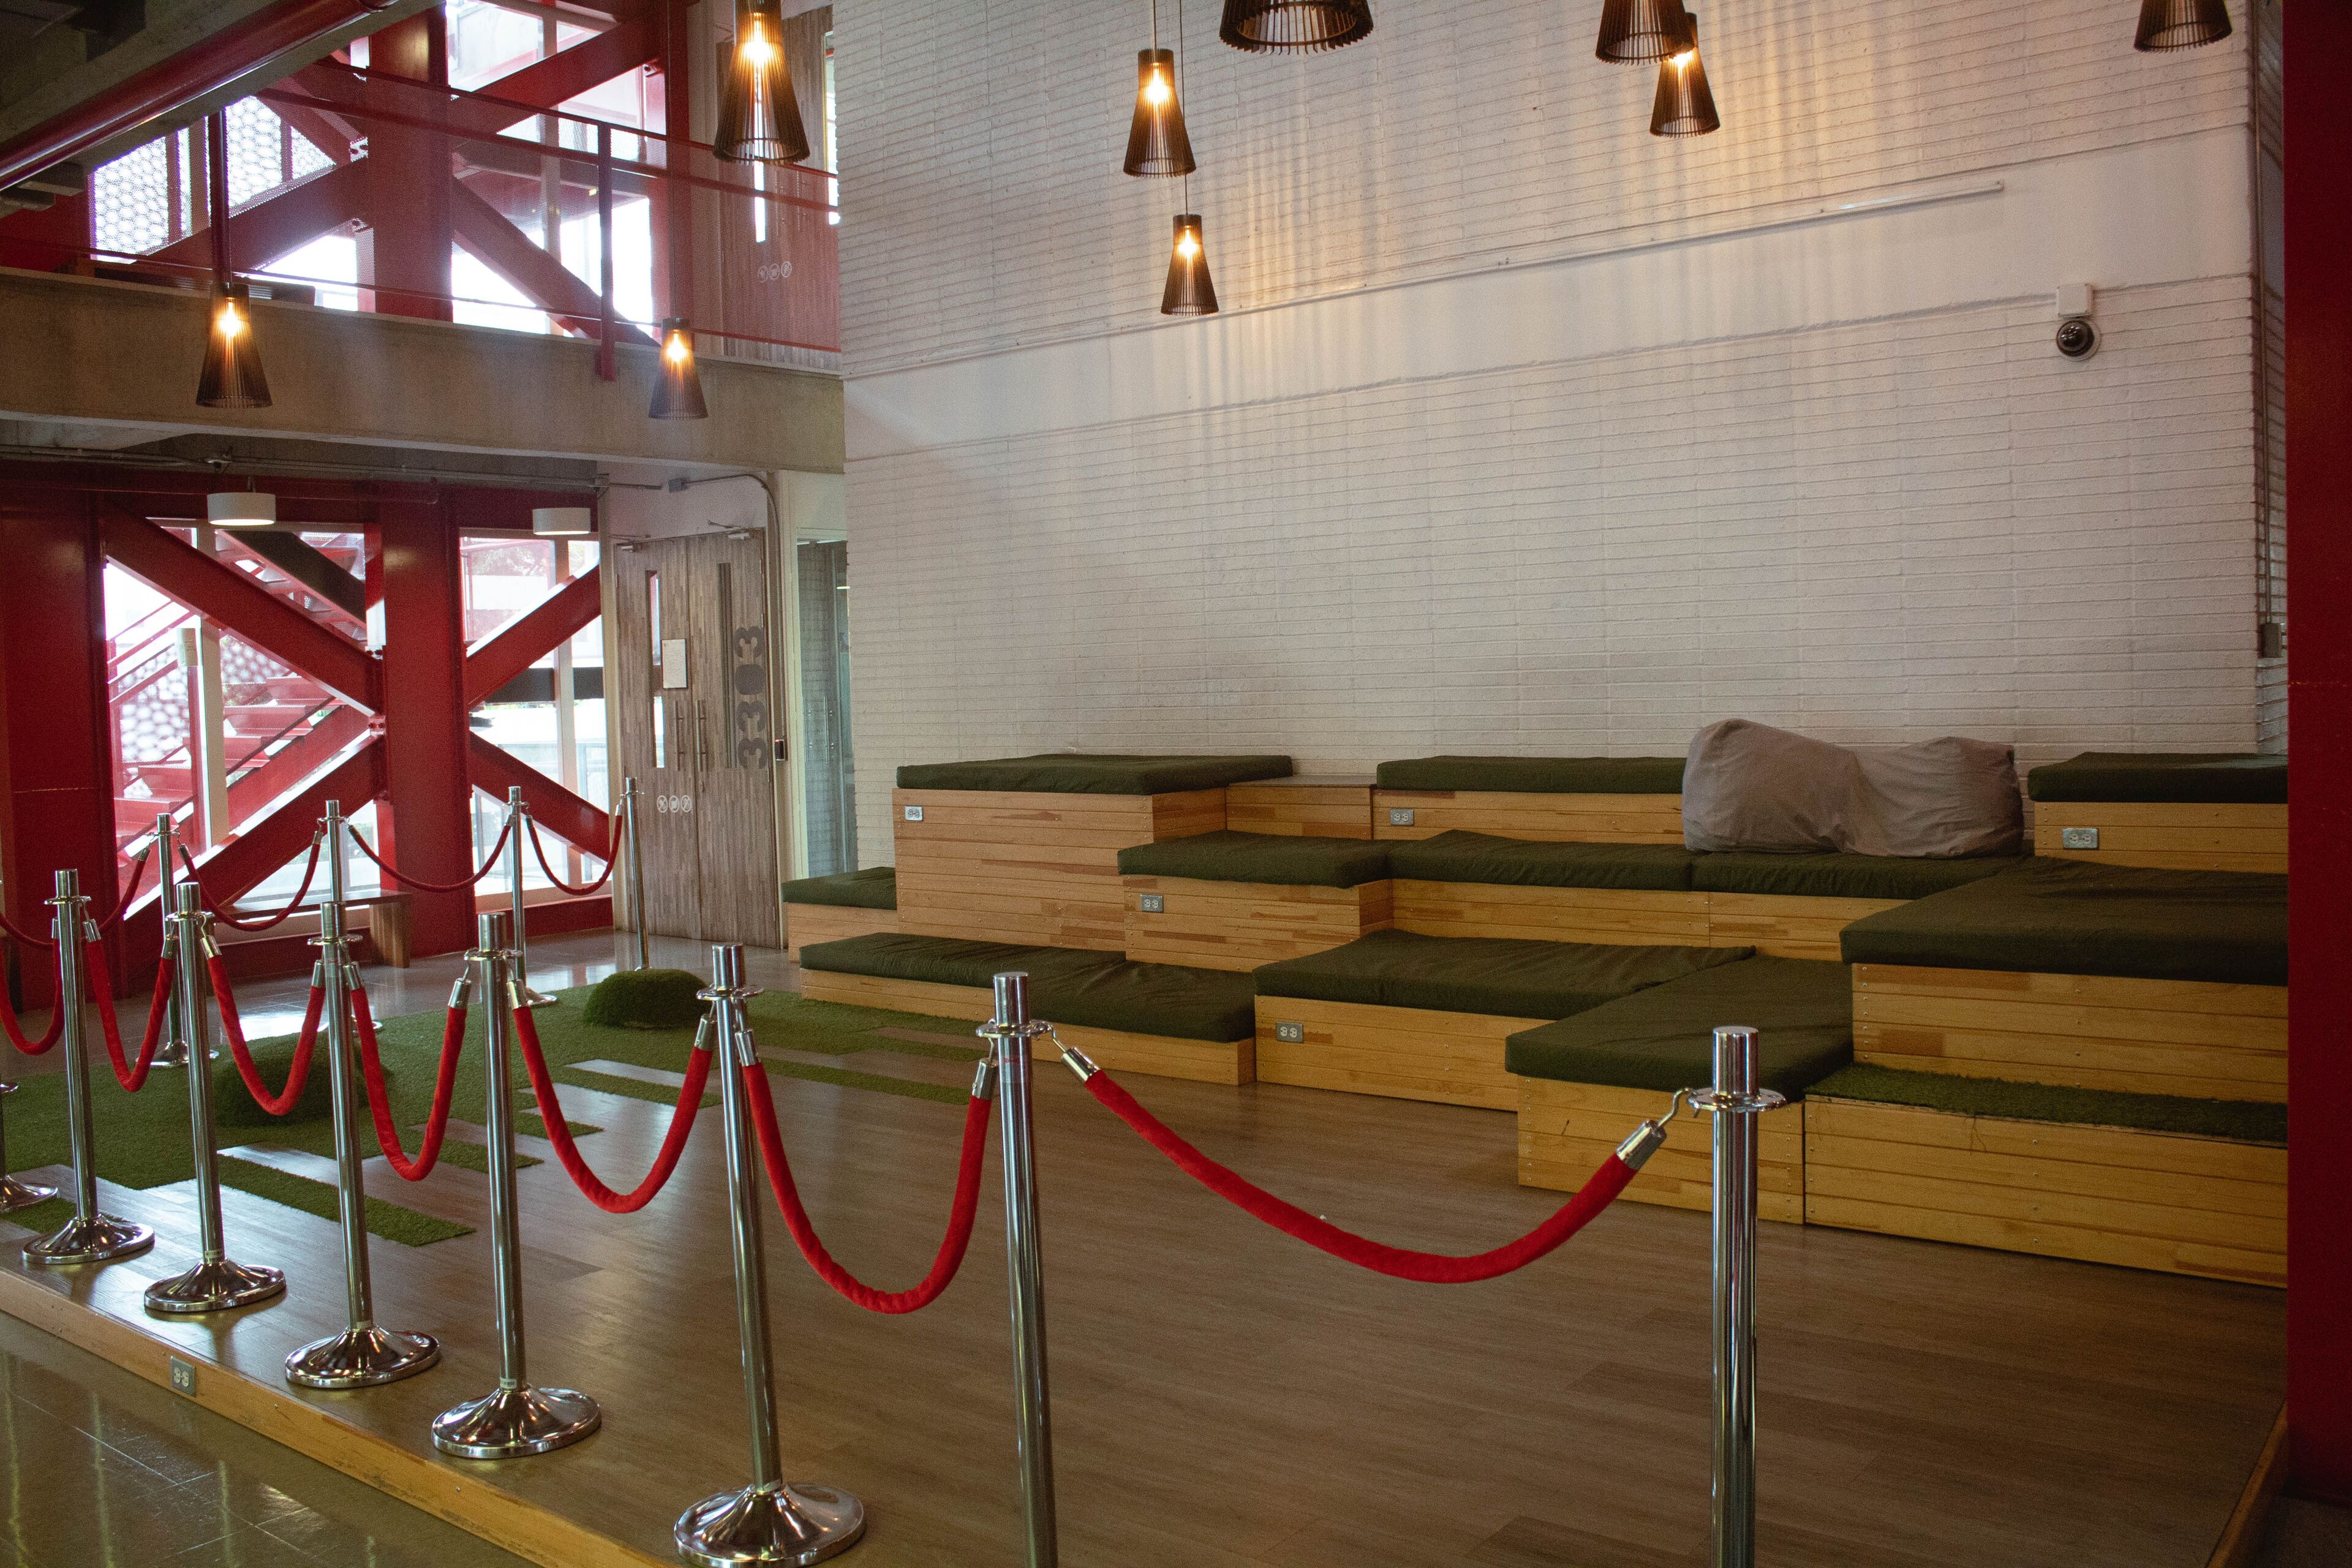 Espacio interior con estilo, con asientos de madera escalonados con cojines, delimitados por cuerdas de terciopelo y iluminación colgante industrial, junto a una escalera.